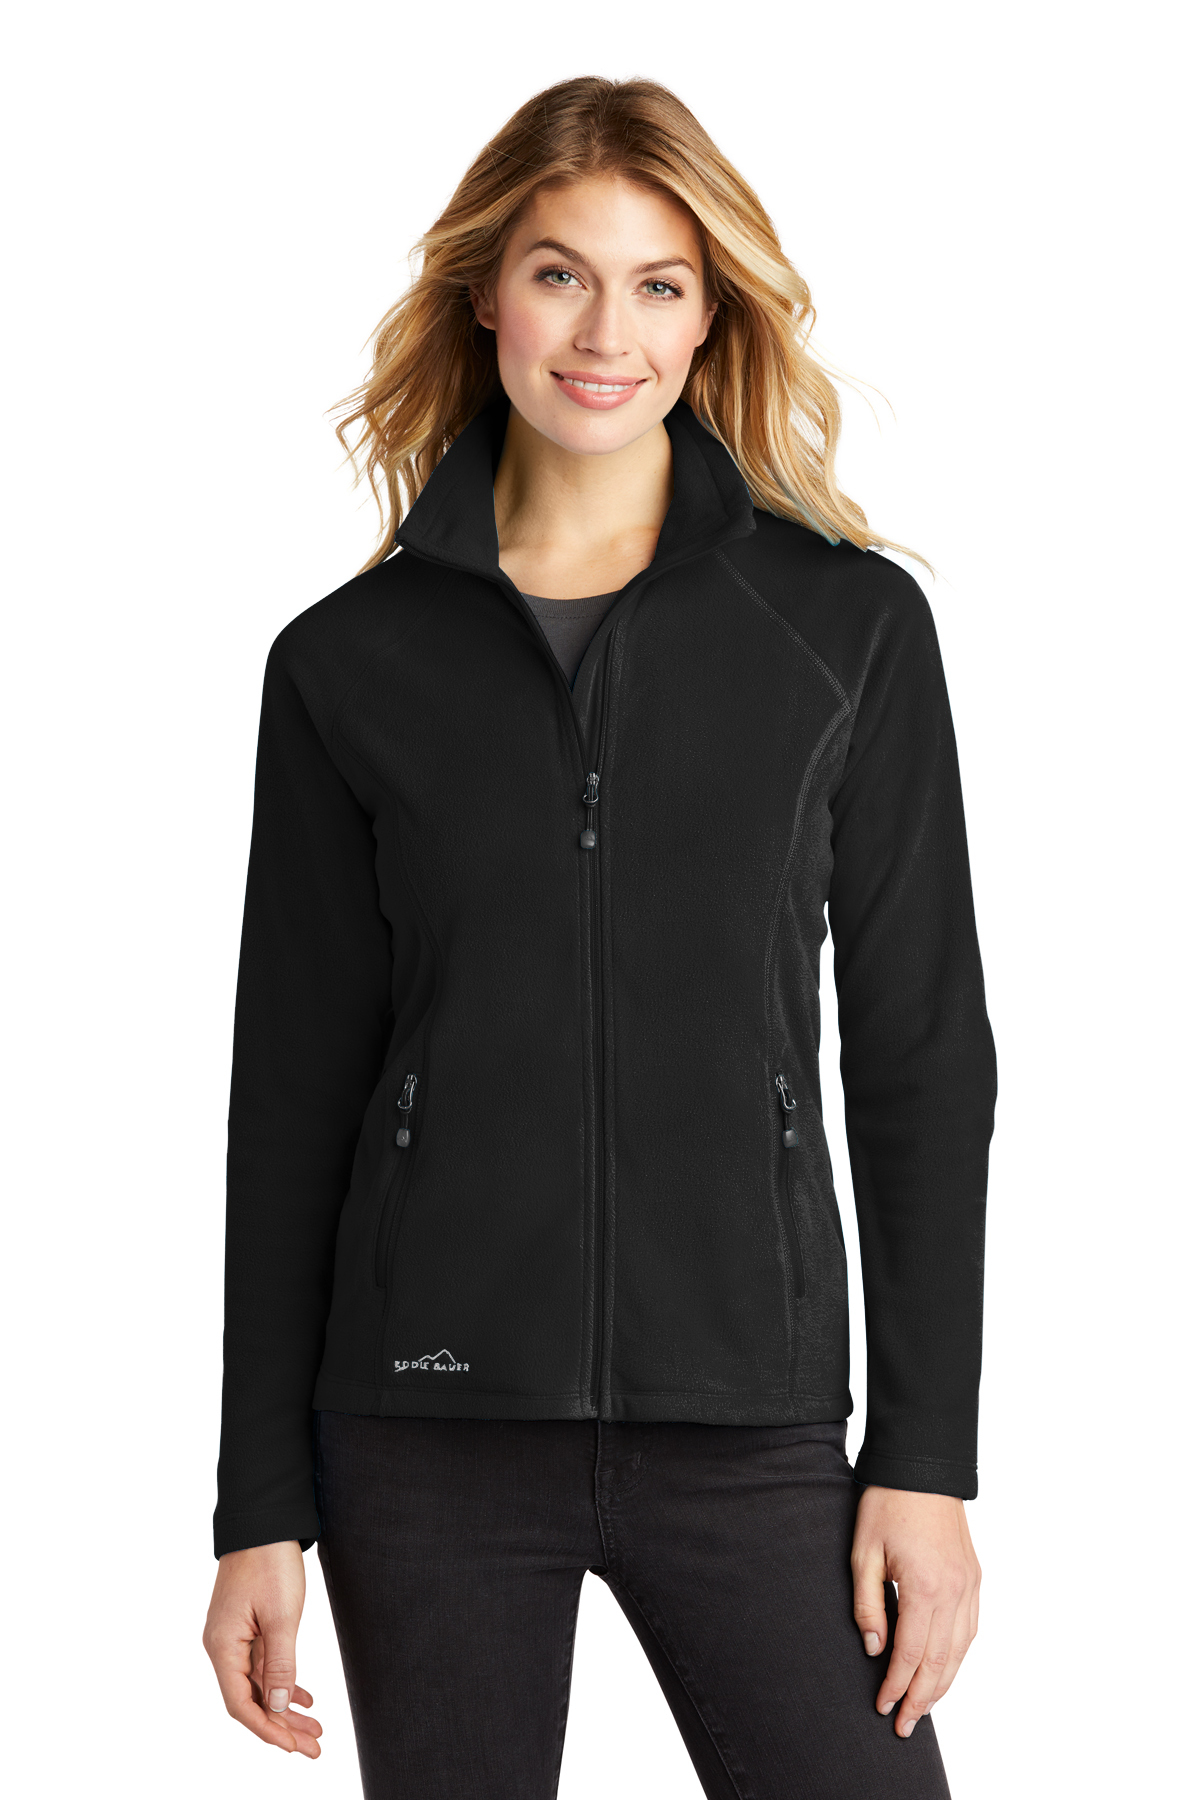 Eddie Bauer Ladies Full-Zip Microfleece Jacket | Product | SanMar